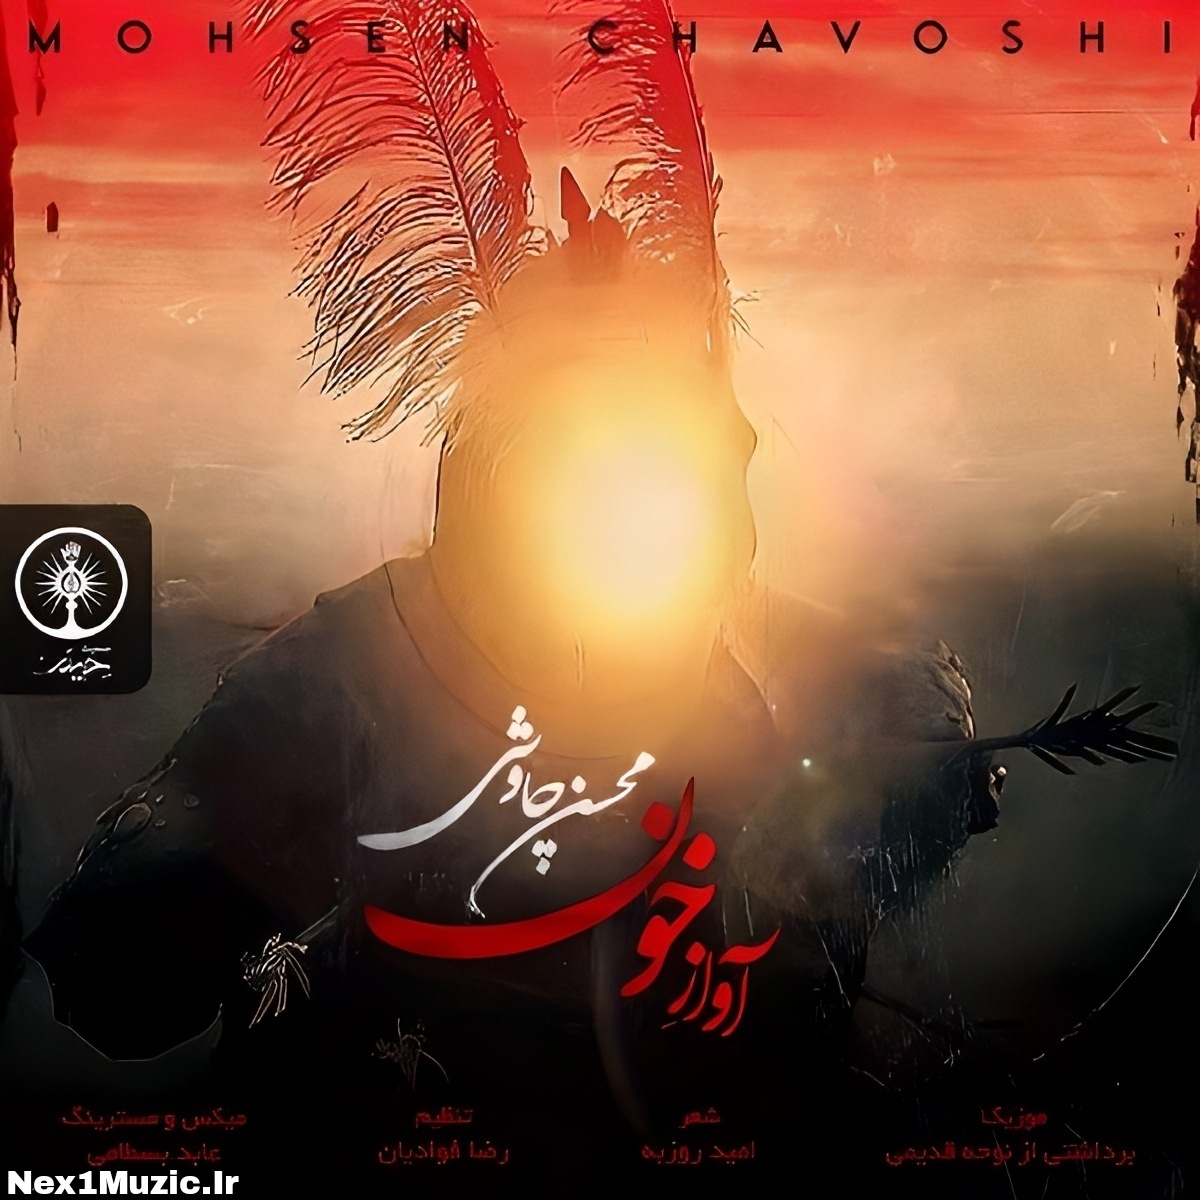  آهنگ جدید محسن چاوشی به نام آواز خون